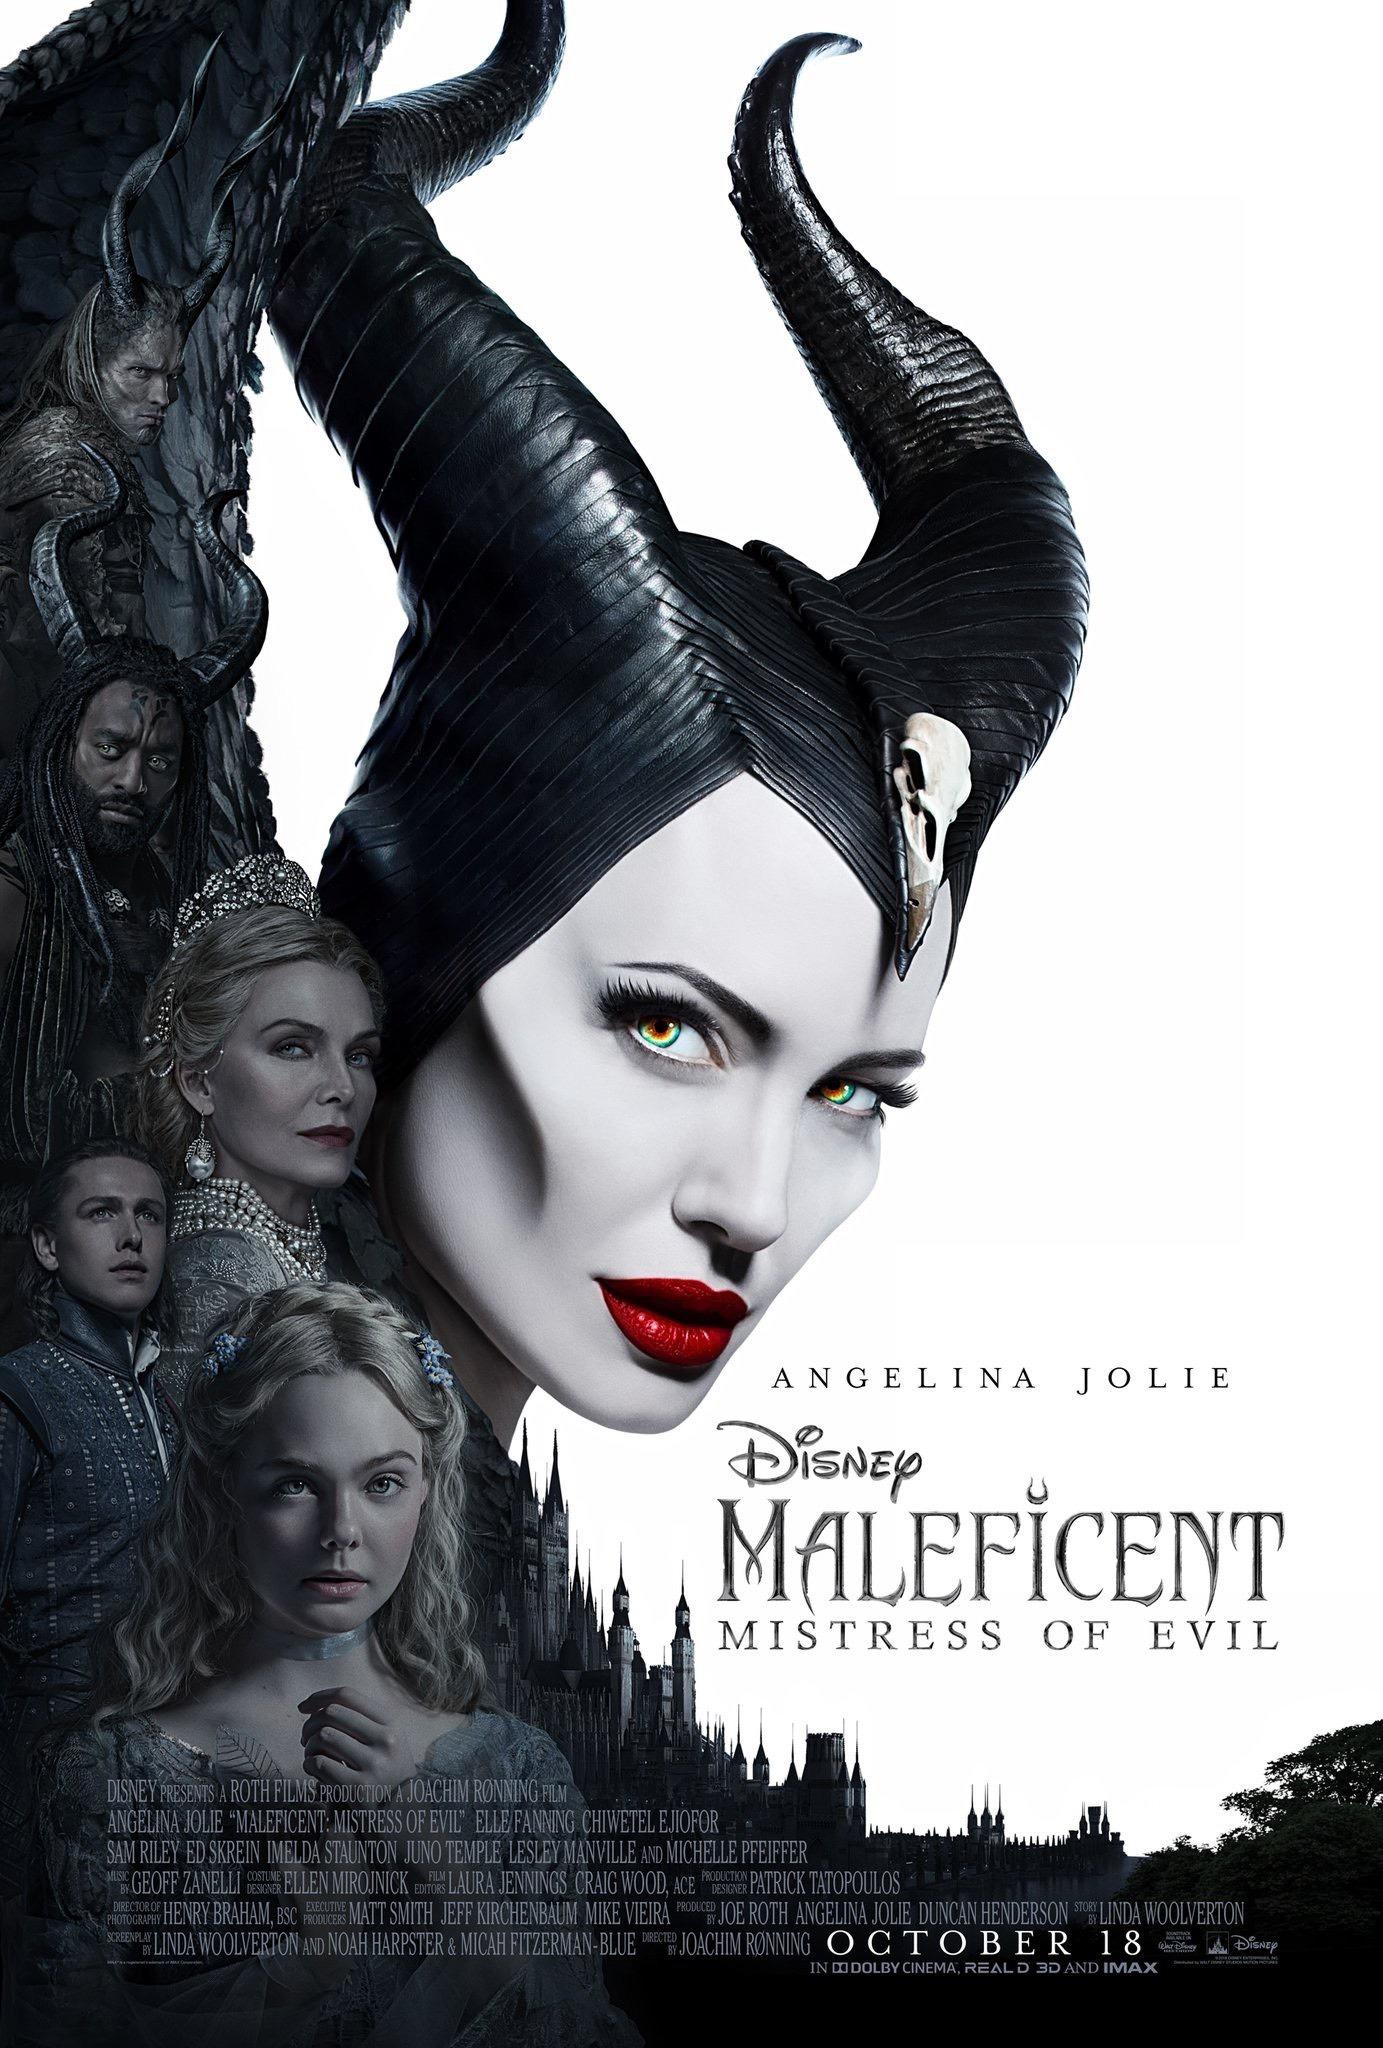 Постер фильма Малефисента: Владычица тьмы | Maleficent: Mistress of Evil